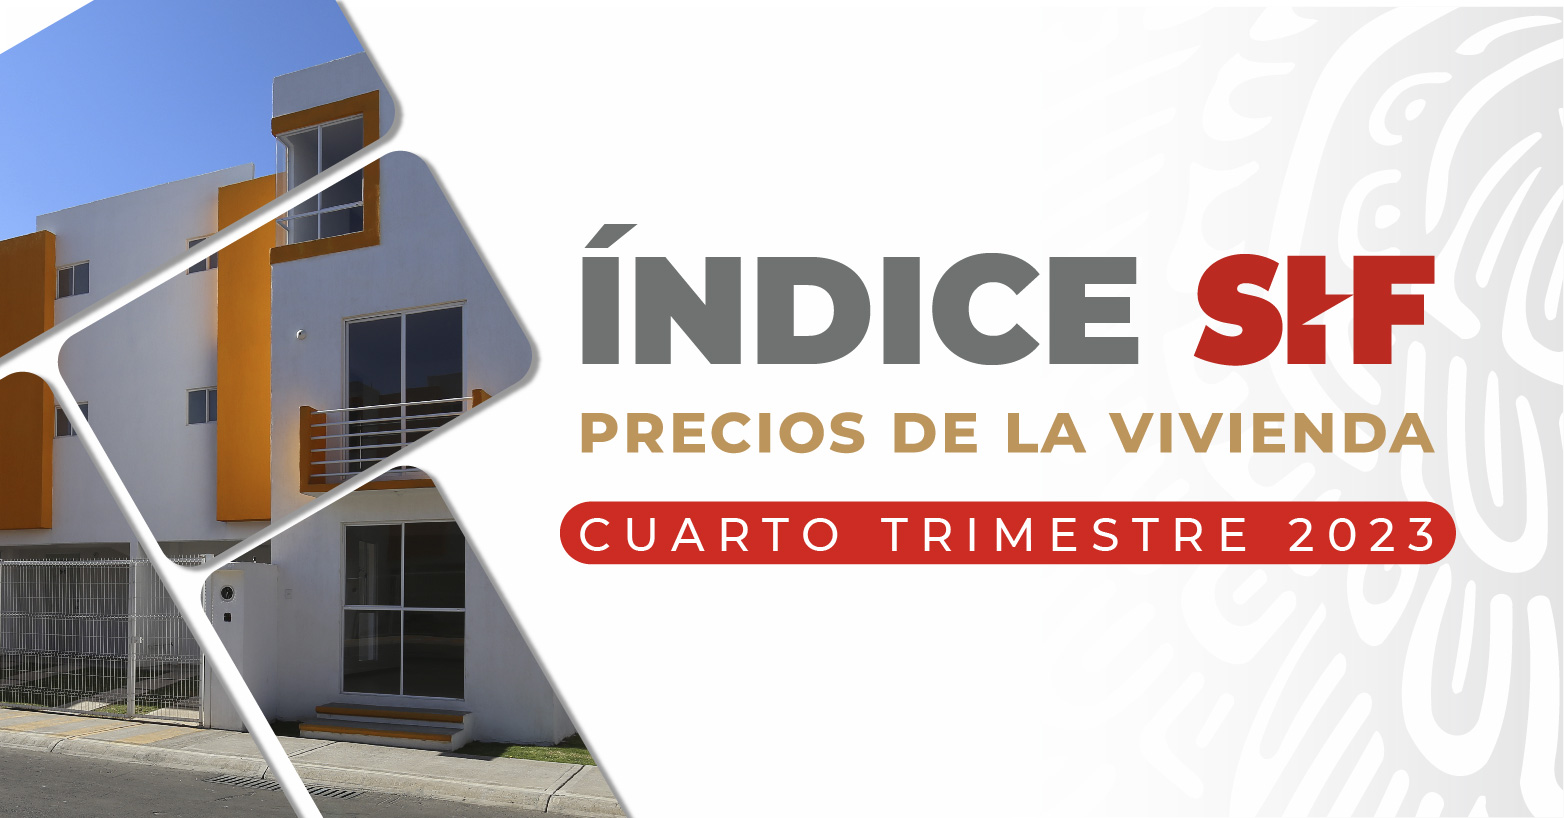 ÍNDICE SHF DE PRECIOS DE LA VIVIENDA EN MÉXICO, CUARTO TRIMESTRE DE 2023